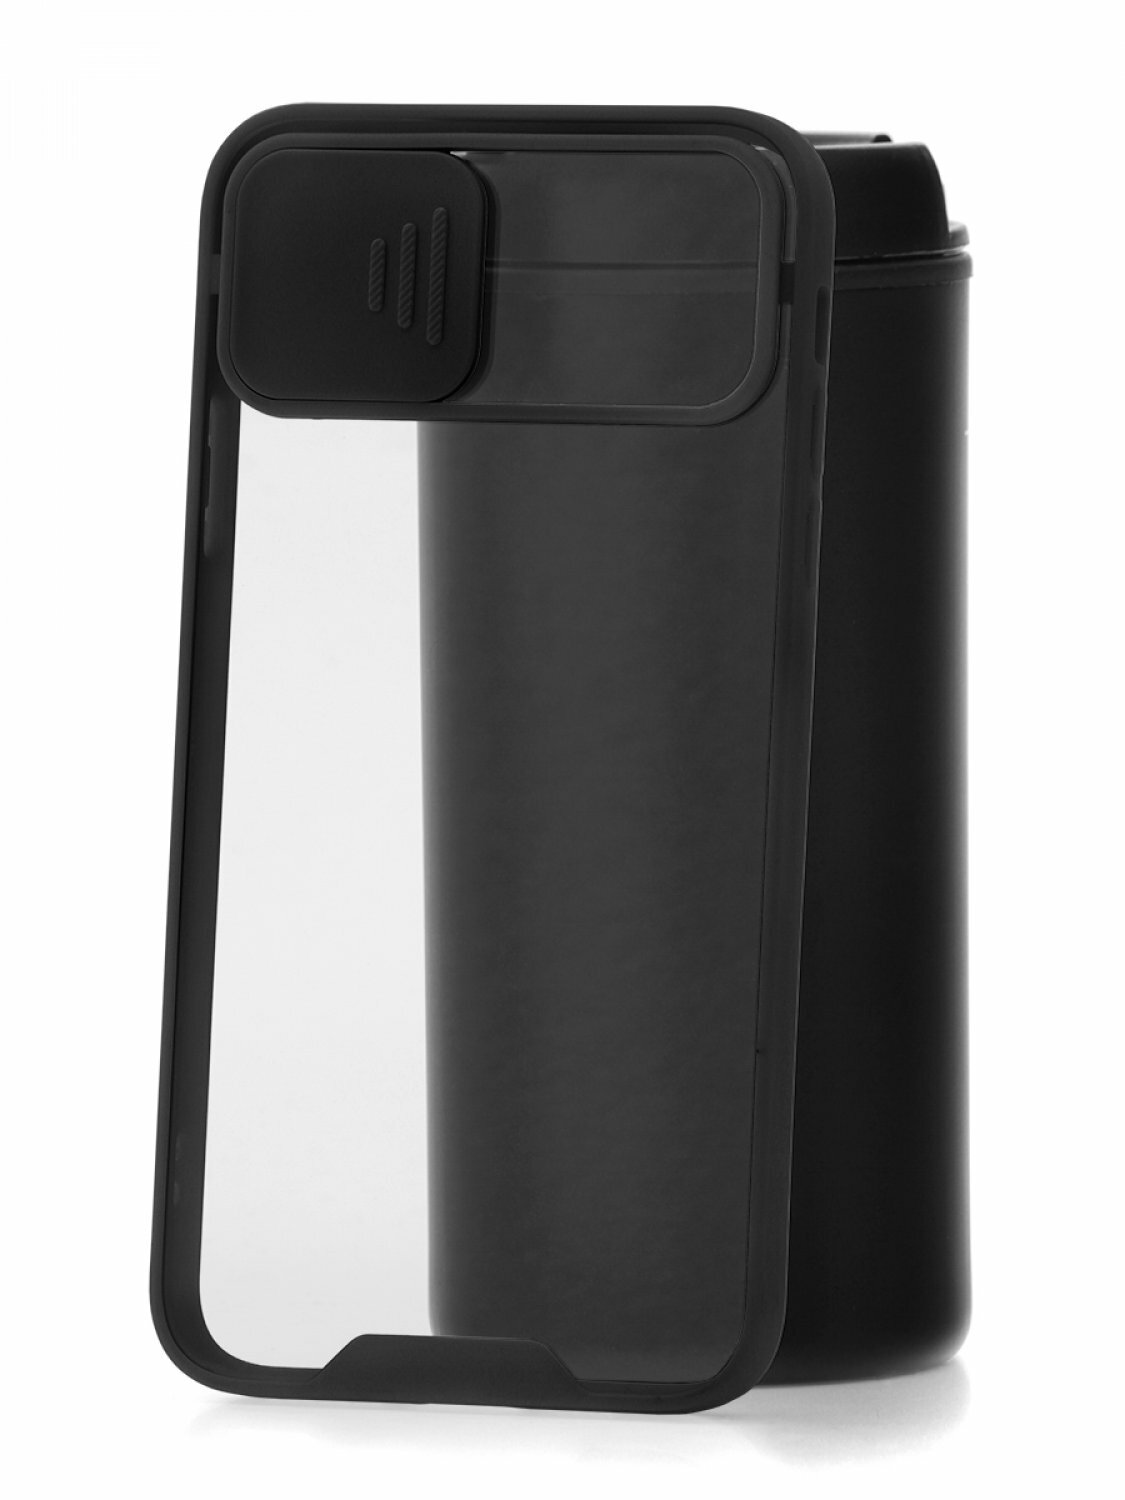 Чехол для iPhone 11 Pro Max Derbi Сloscam Black, силиконовый бампер, накладка с защитой камеры, защита углов противоударный case